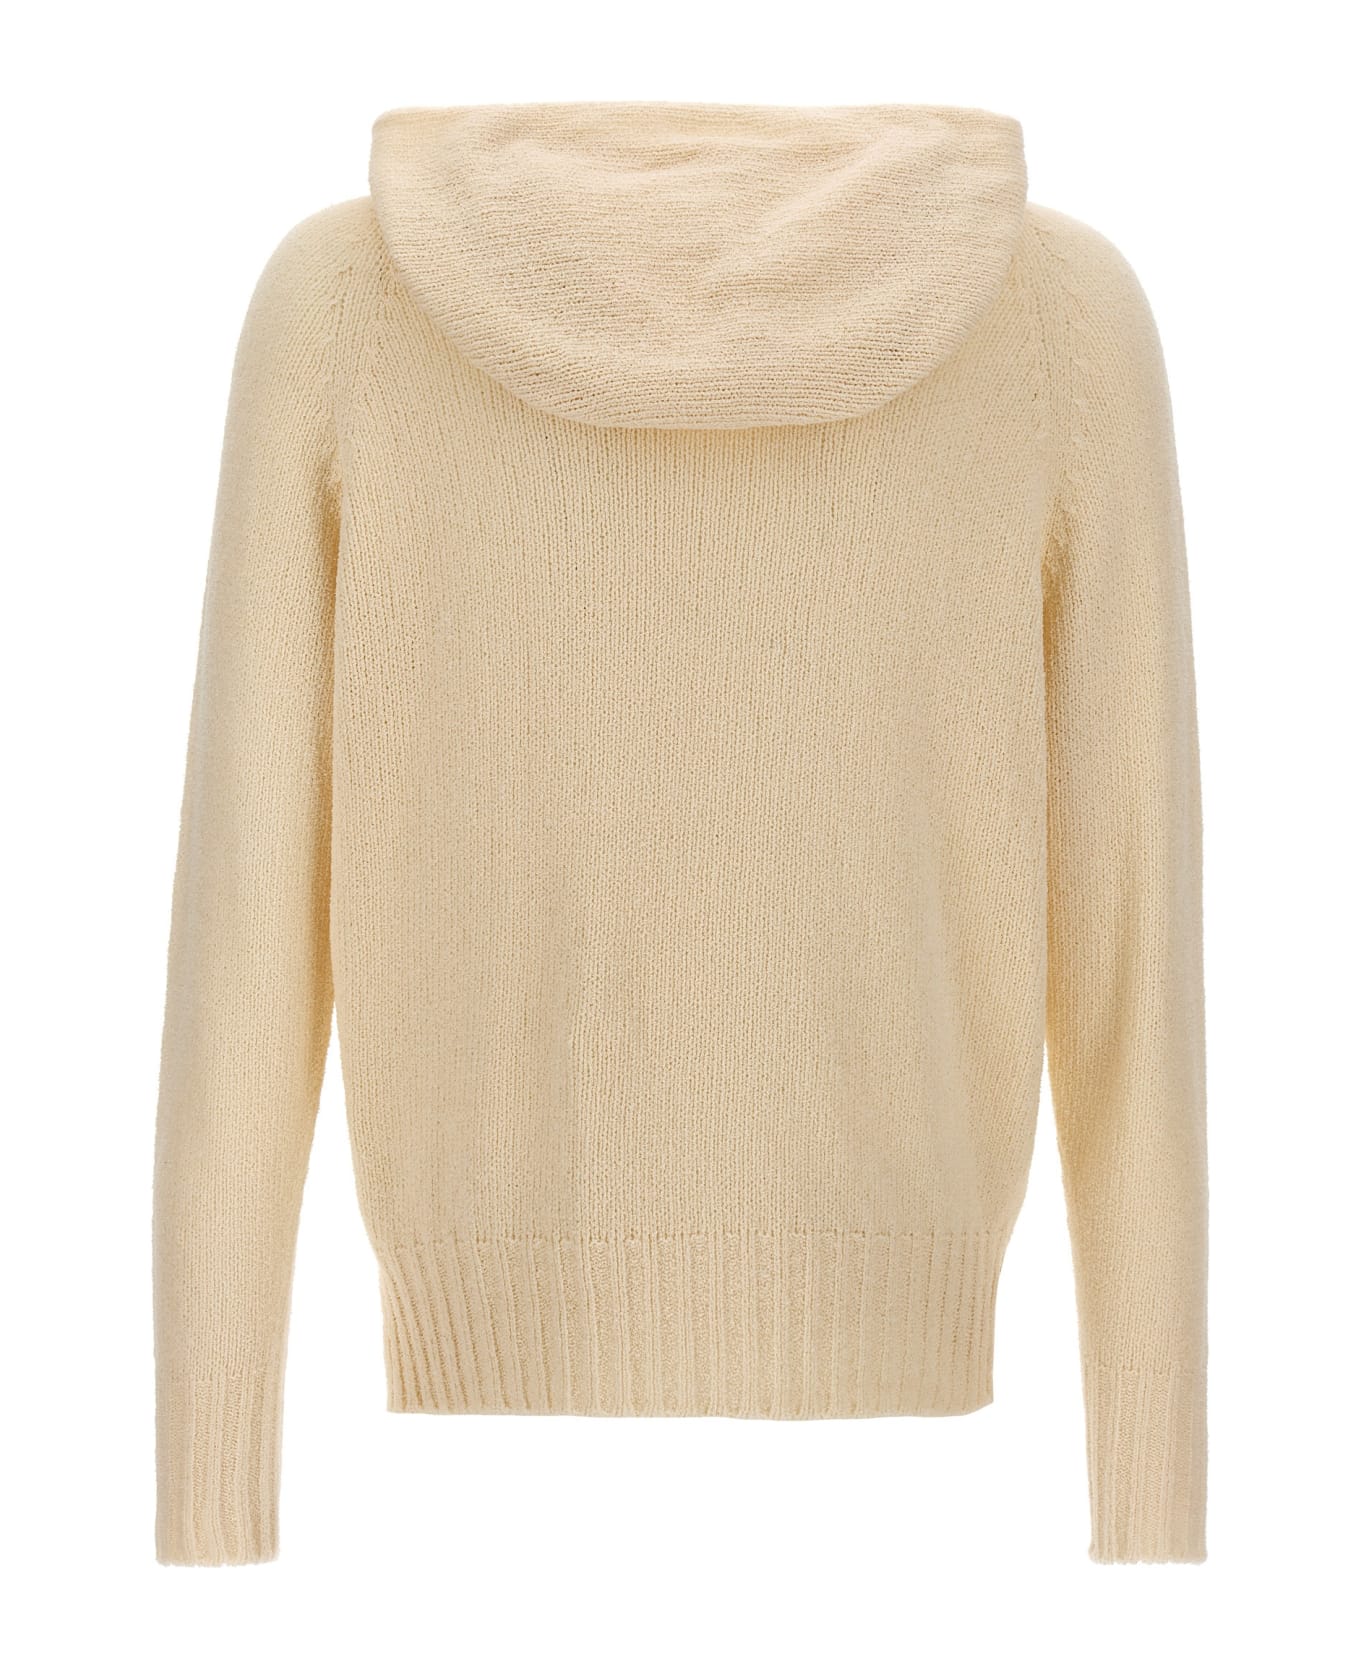 Ma'ry'ya Hooded Sweater - White